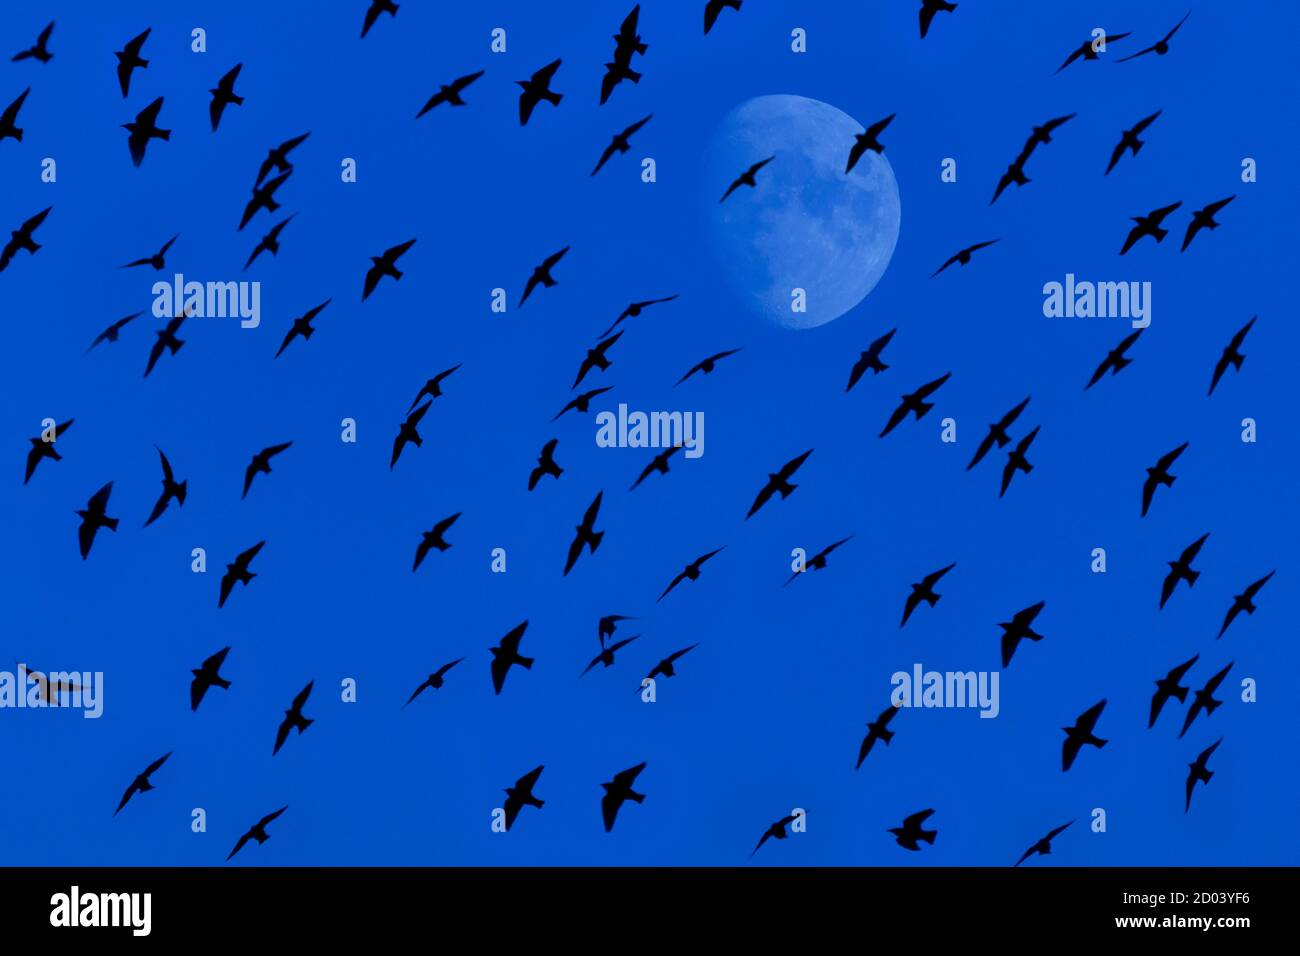 Rebaño de aves volando al atardecer frente a la luna llena de niebla Foto de stock